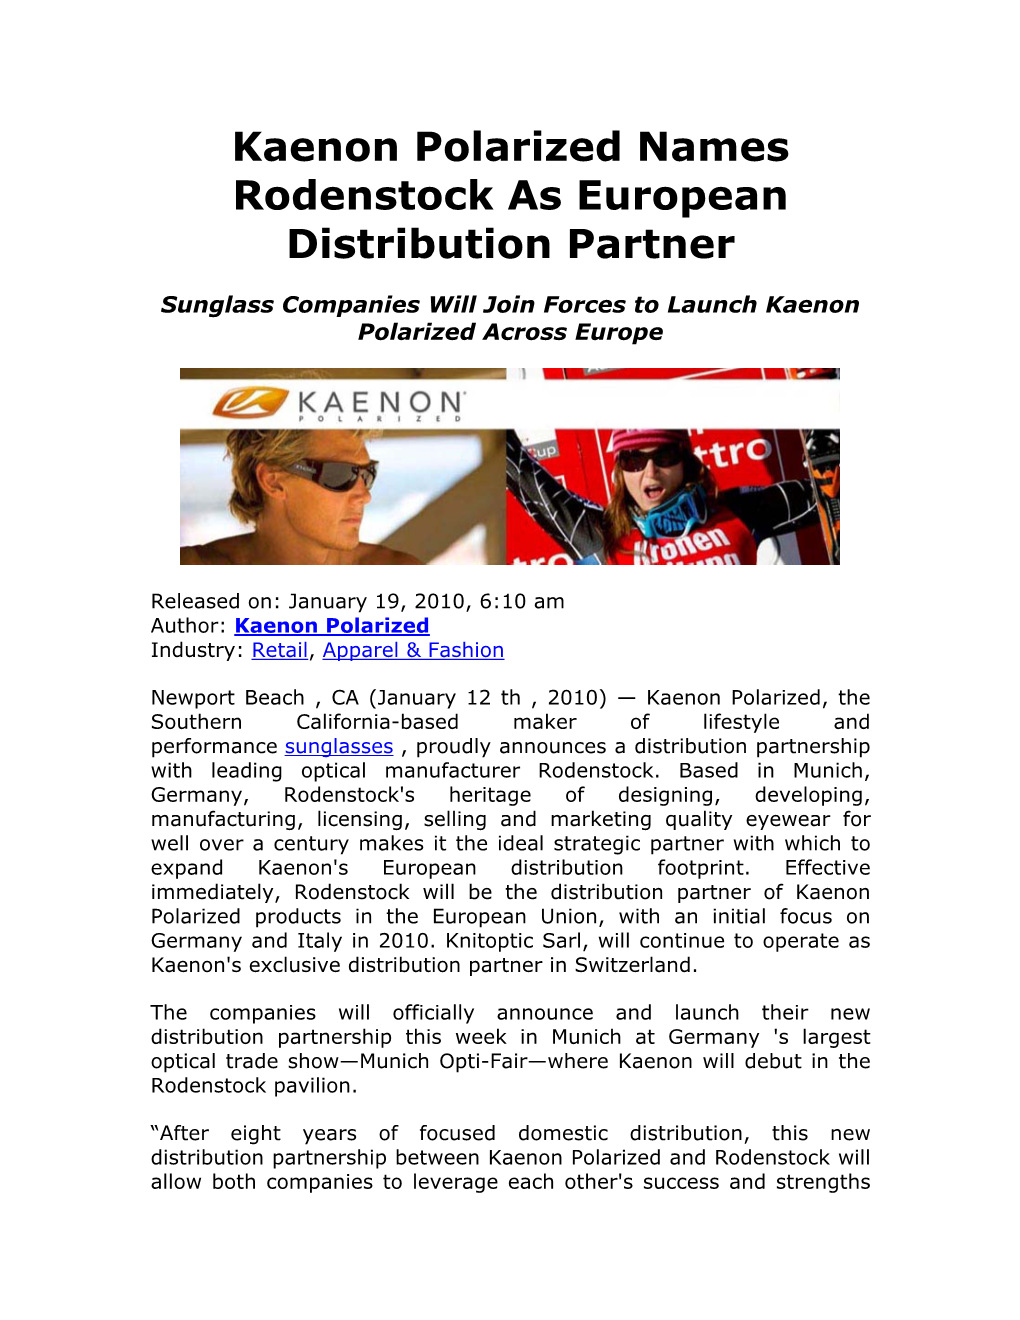 Kaenon Polarized Names Rodenstock As European Distribution Partner